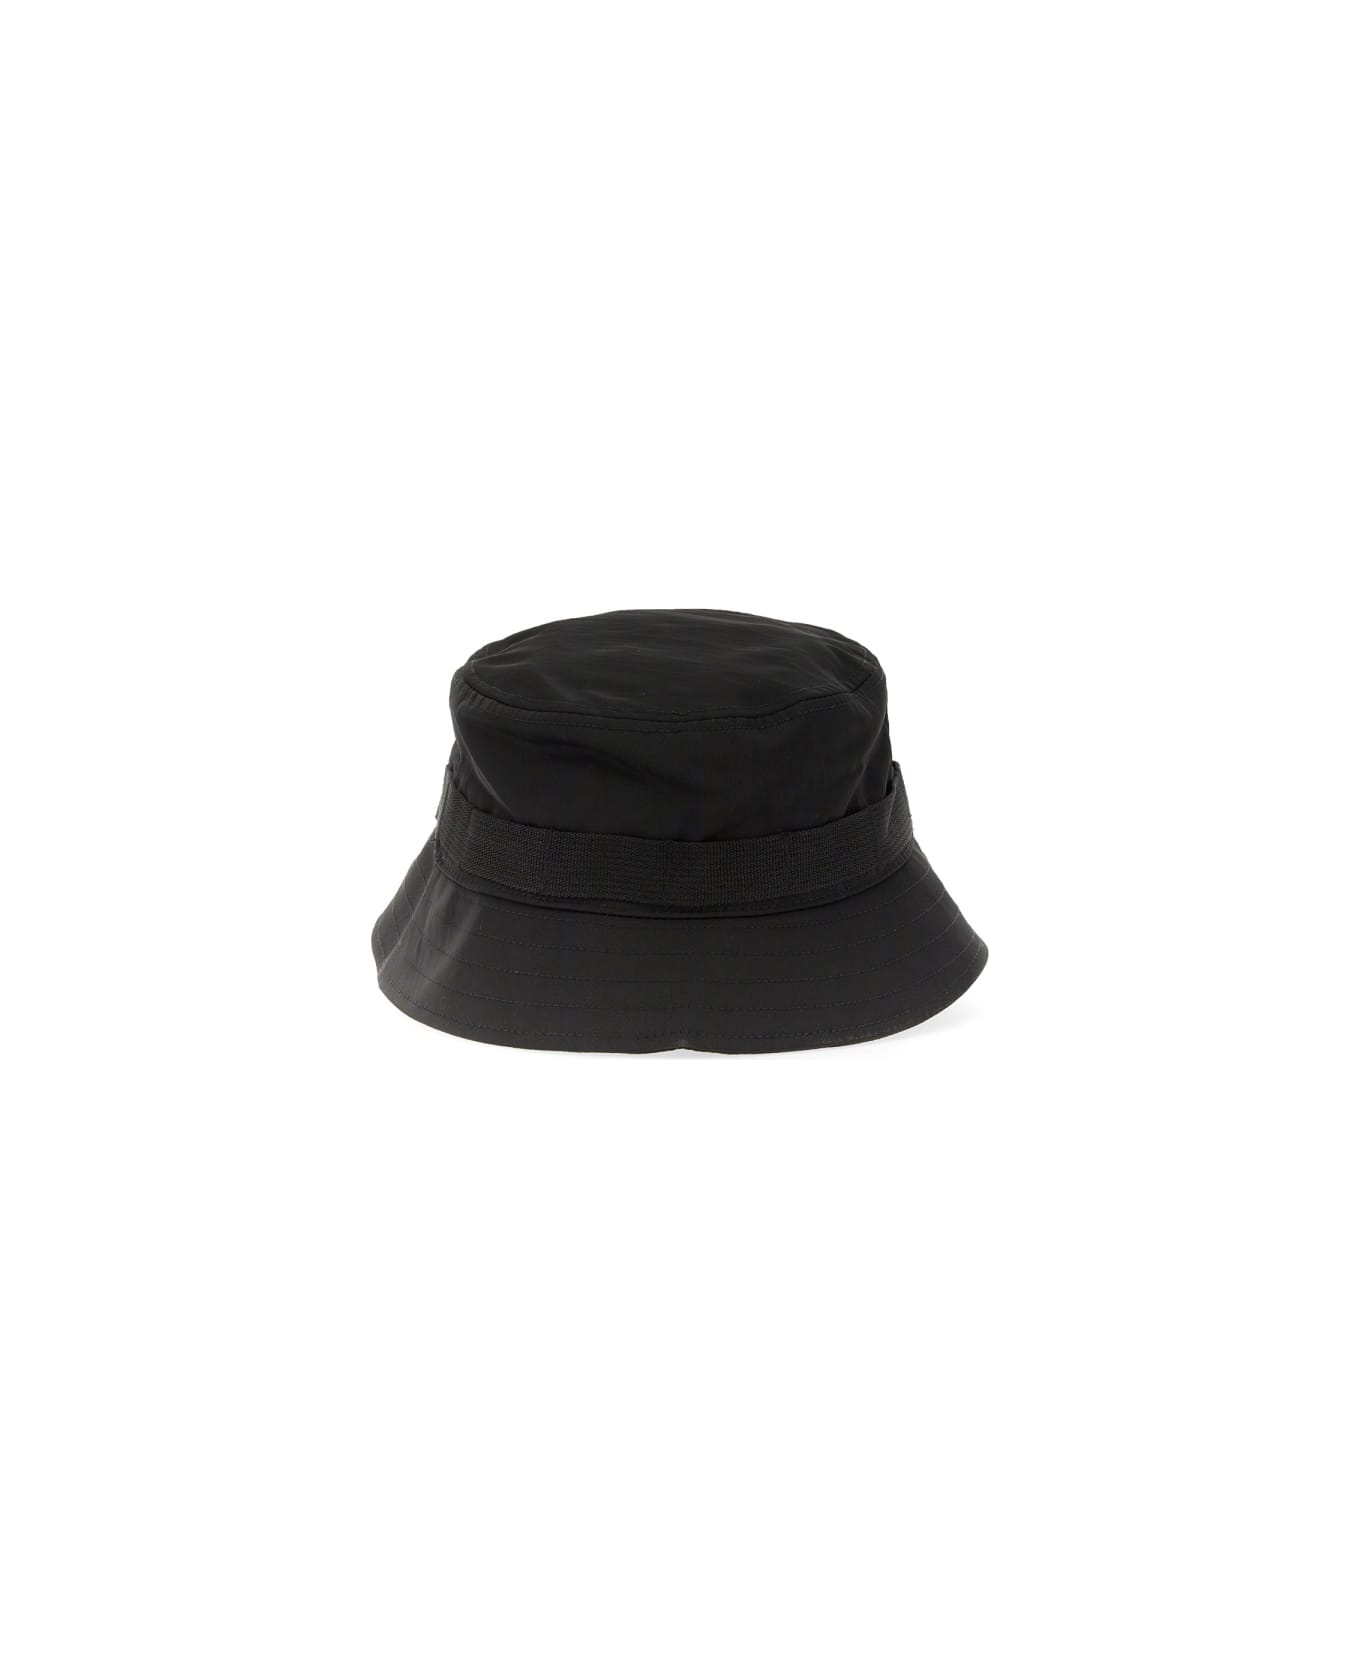 Kenzo Bucket Hat With Logo - BLACK